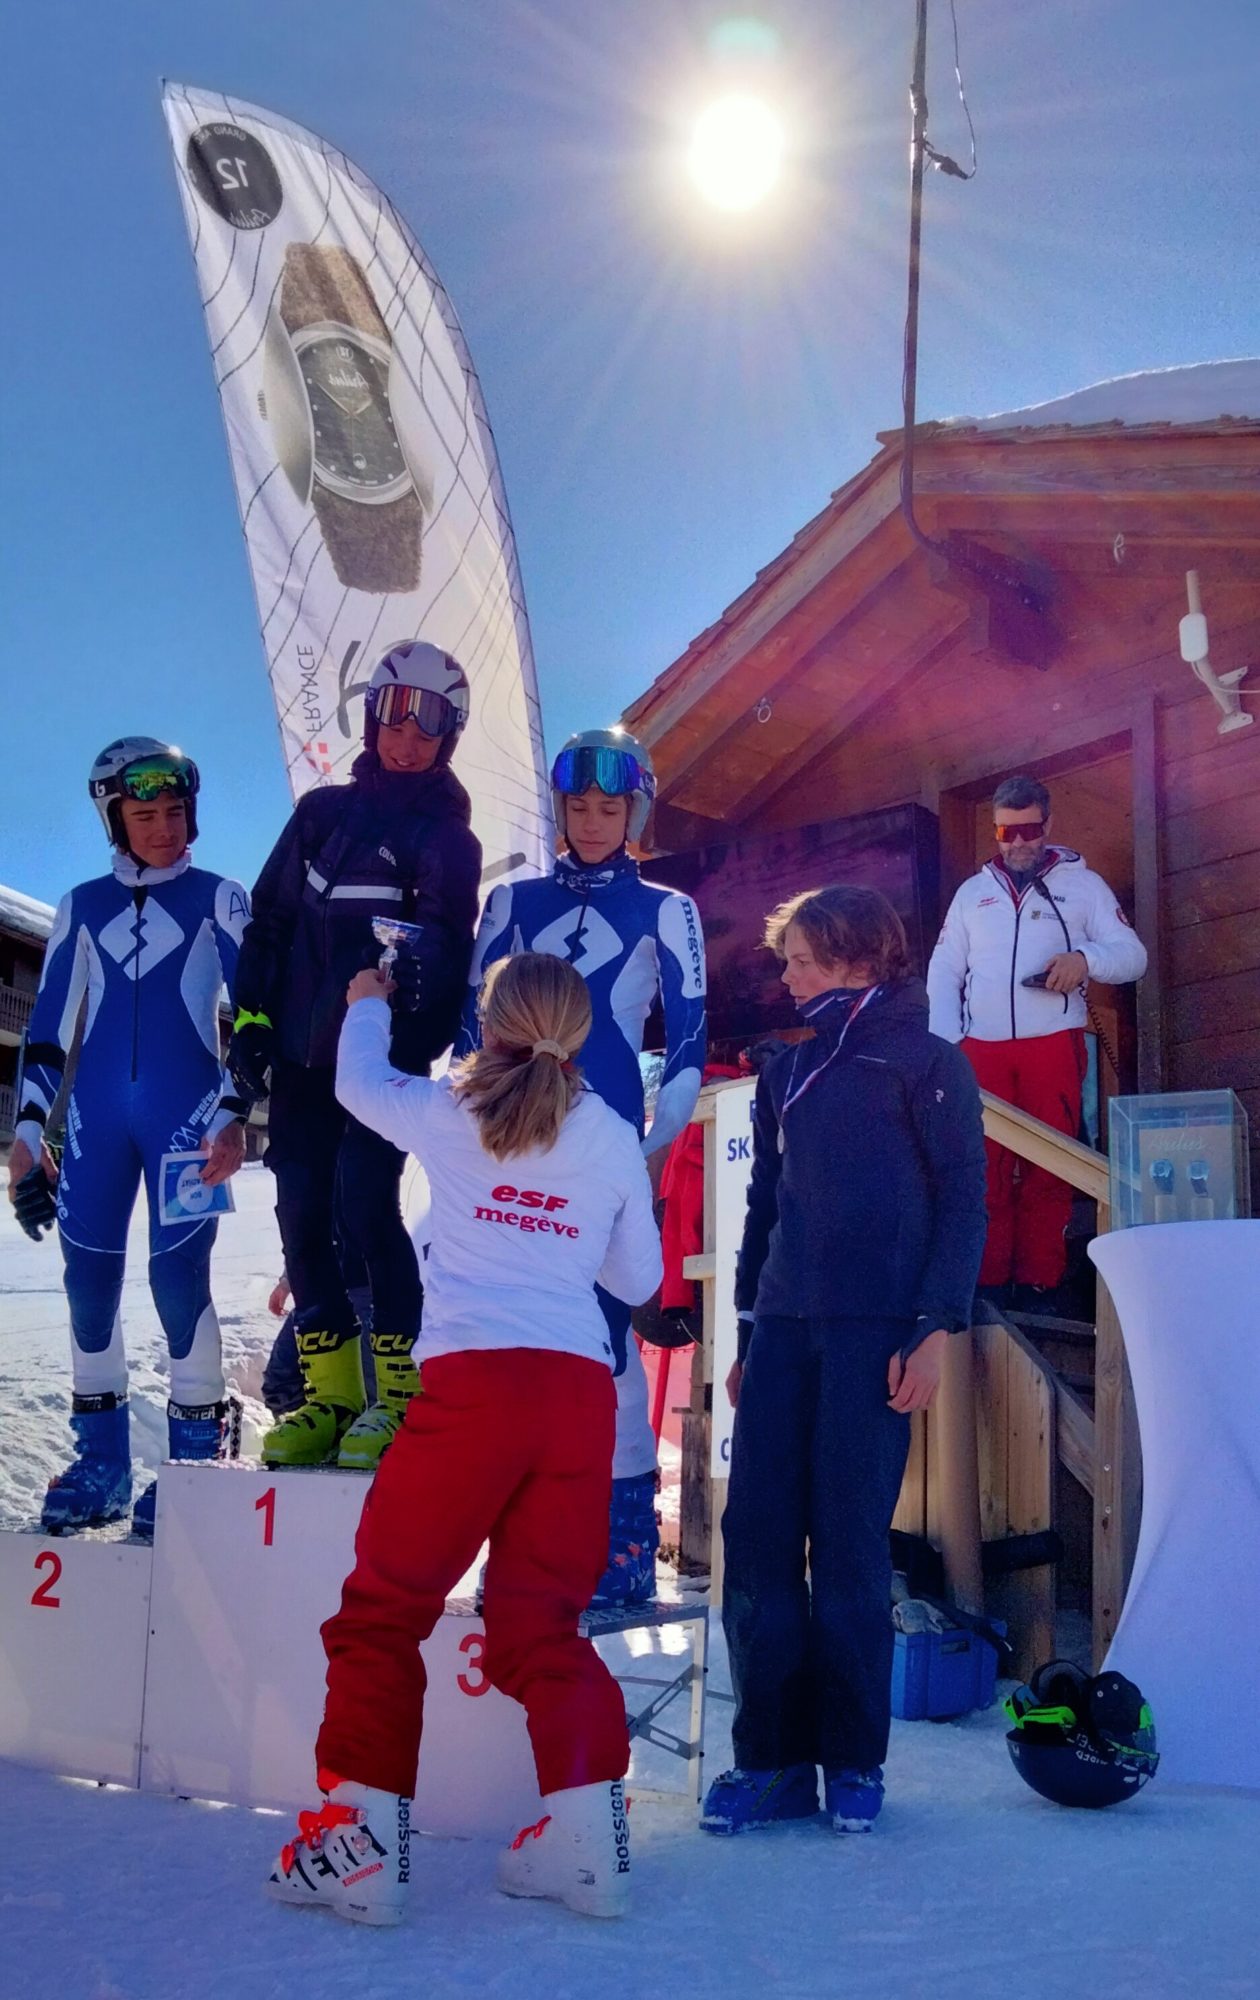 Les montres Arilus, partenaire d'une compétion de ski en slalom organisée par l'ESF de Megève